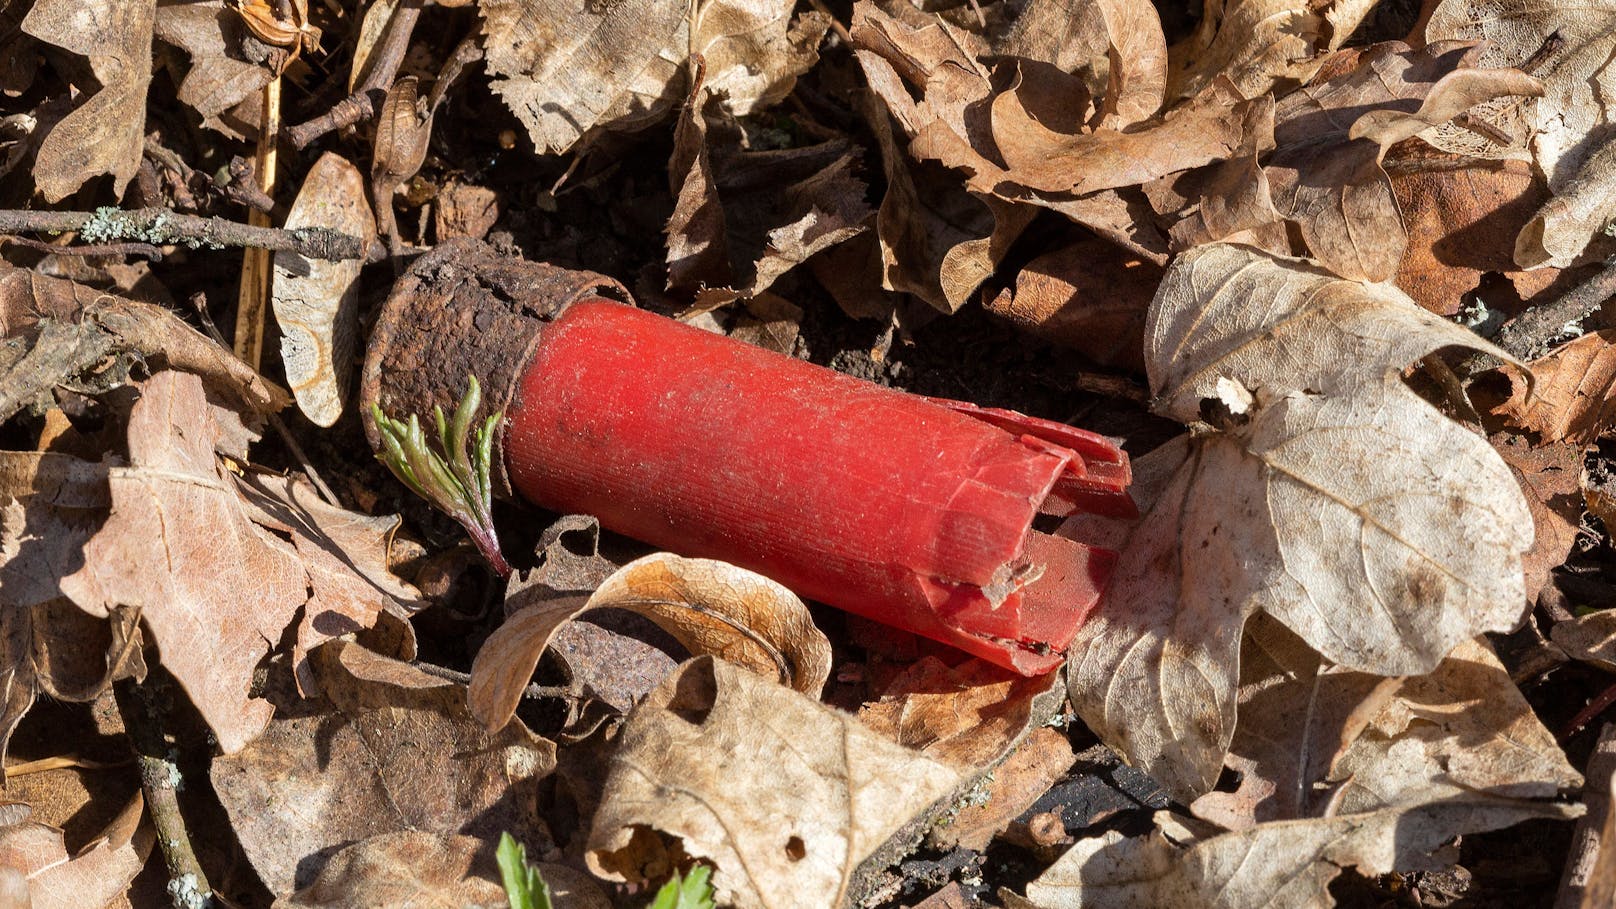 Der Bub fand Jagdmunition, erhitzte sie mit einem Feuerzeug – Explosion! (Symbolfoto)